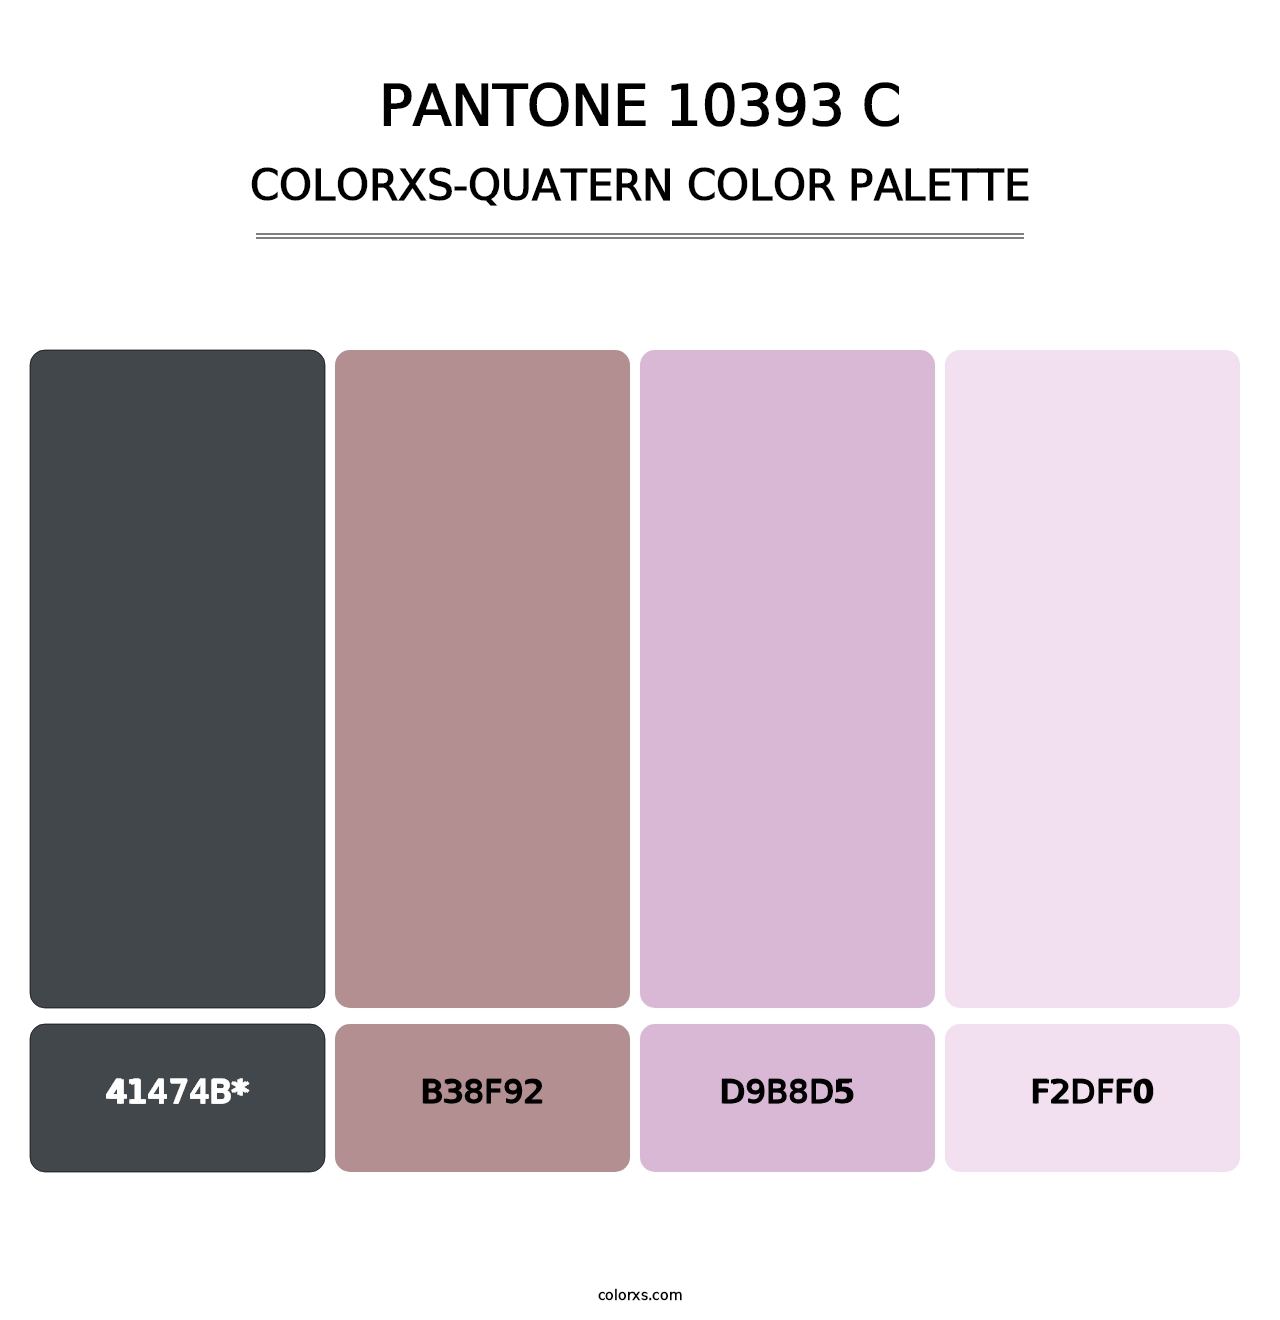 PANTONE 10393 C - Colorxs Quatern Palette